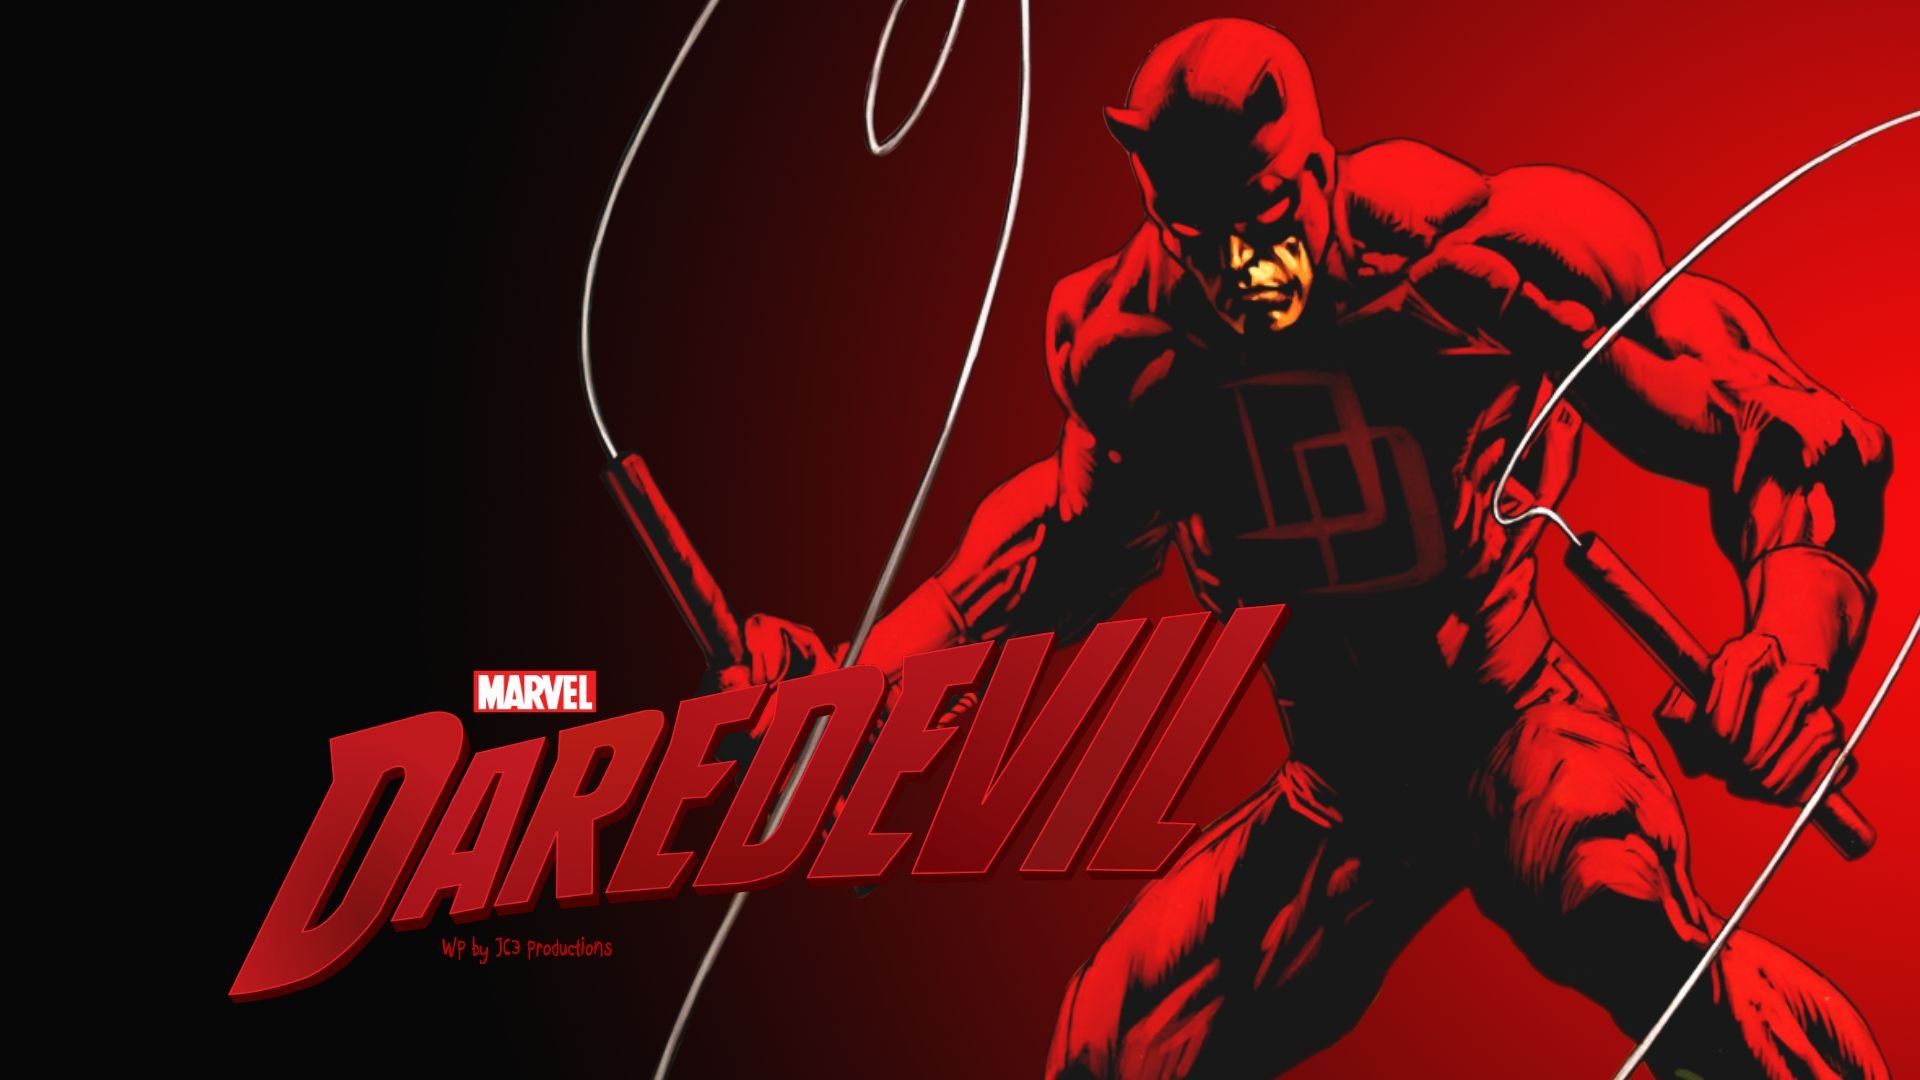 Marvel's Daredevil Wallpaper